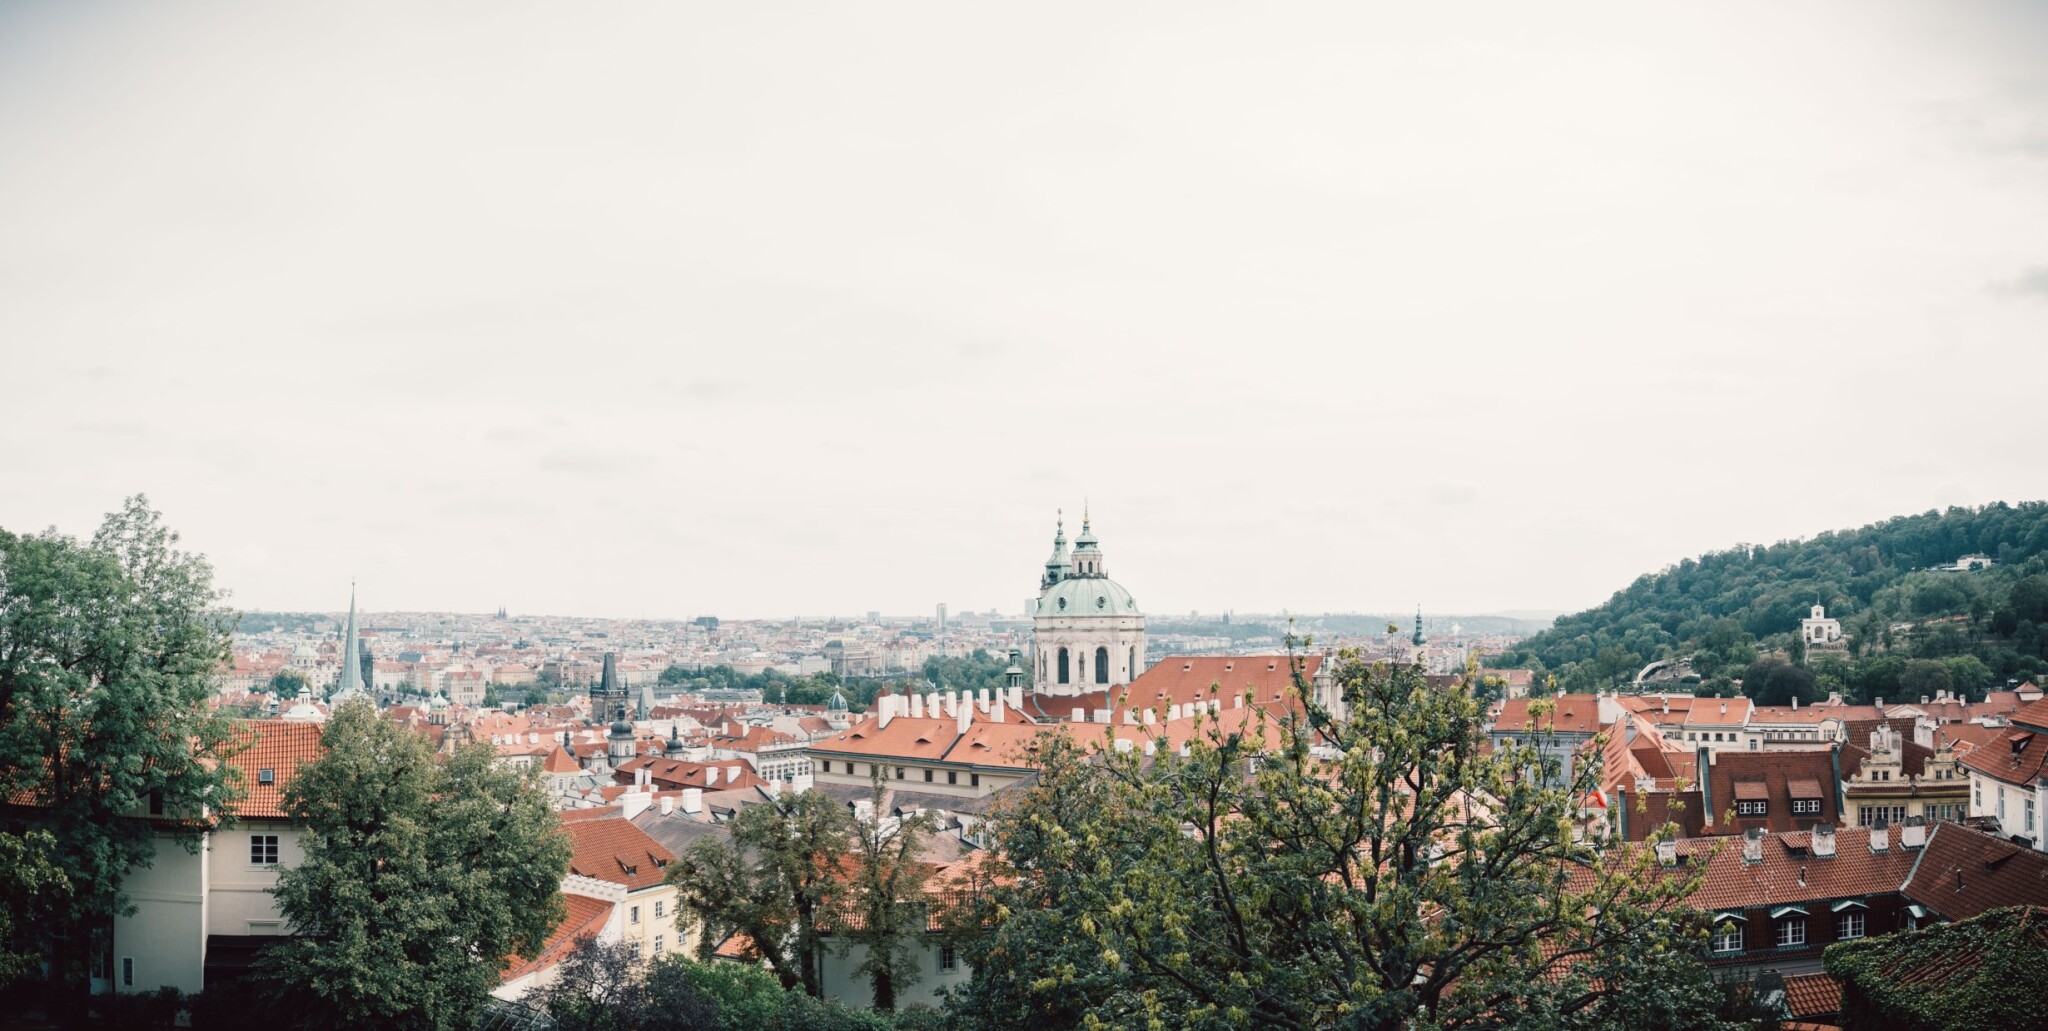 Ceny bytů v Praze po čtyřech letech klesly. Dolů jdou i prodeje